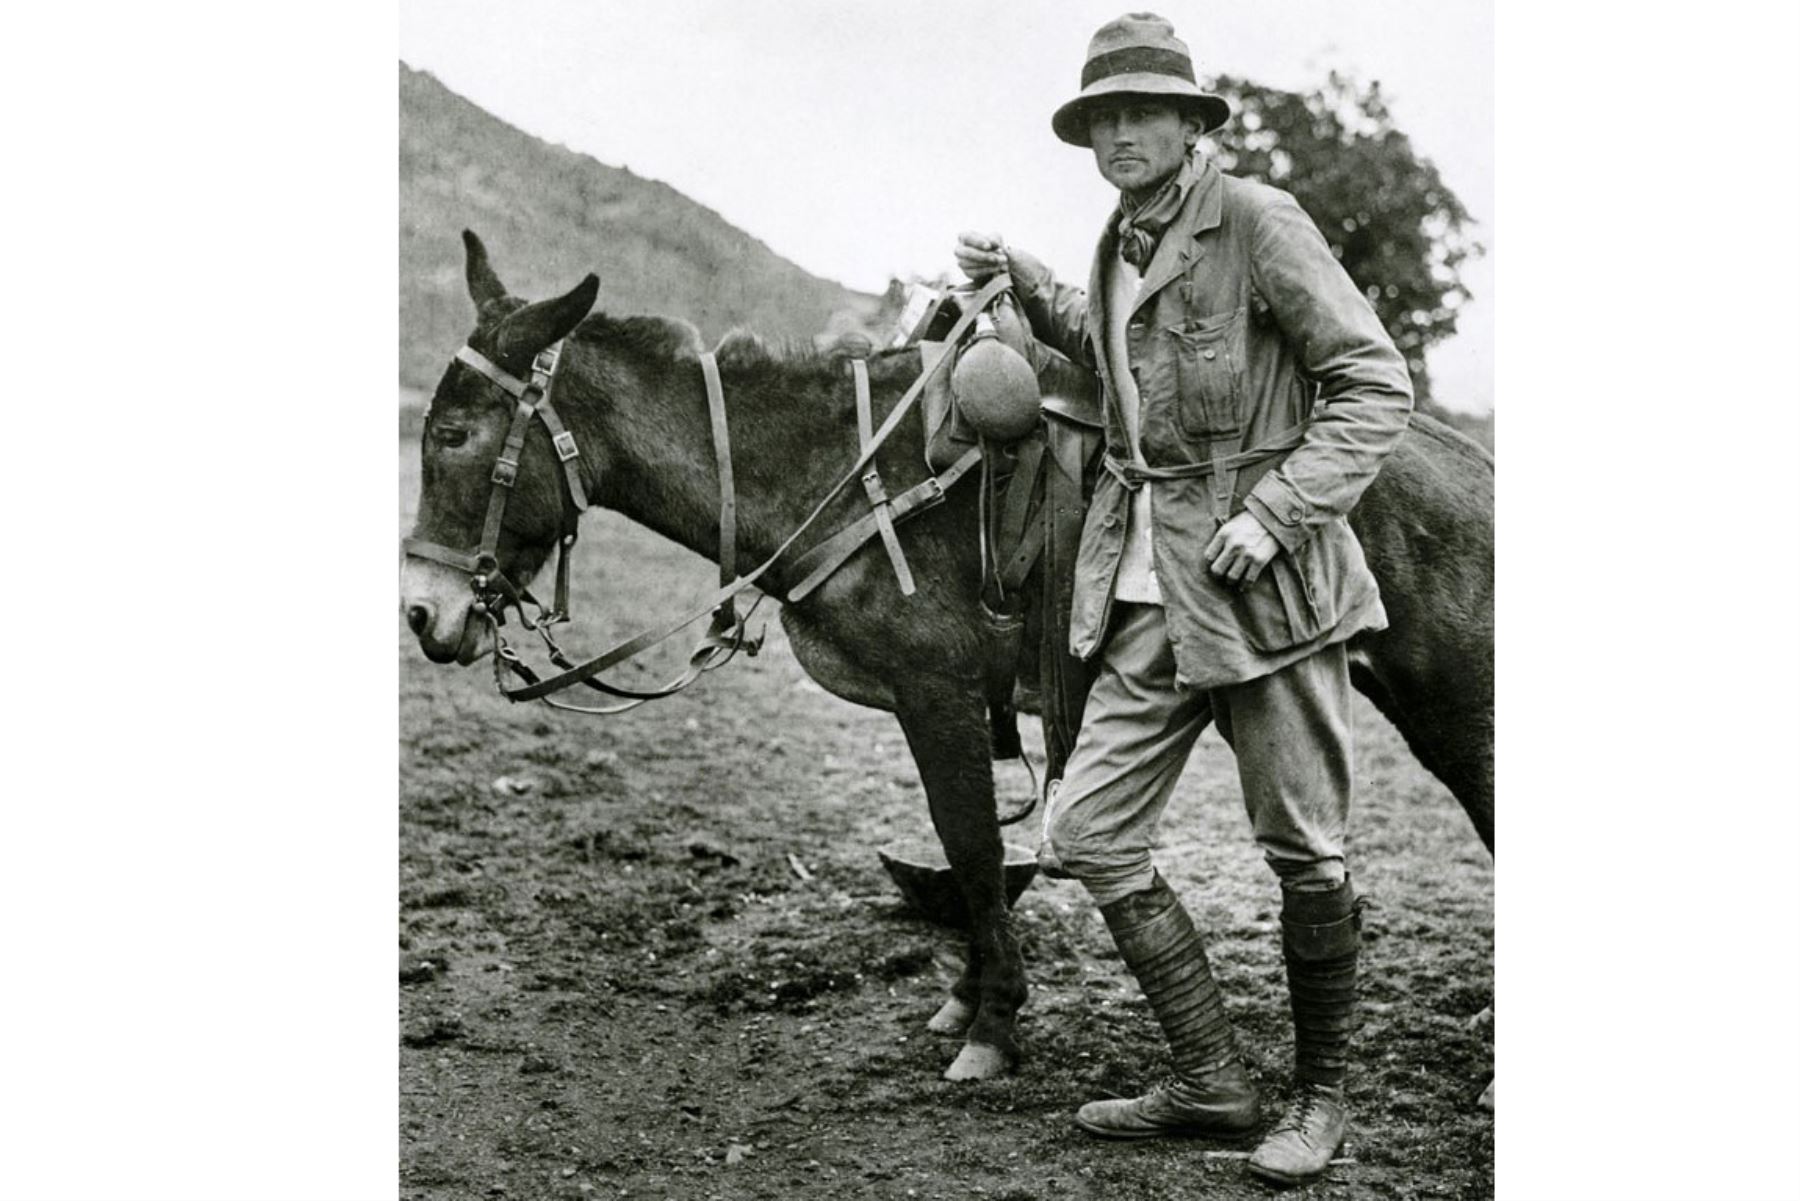 Arqueólogo estadounidense Hiram Bingham que descubrió en 1911 e hizo famosa la ciudadela inca de Machu Picchu, sentada a 2.350 metros sobre el nivel del mar en el corazón del valle de Urubamba, en el sur de Perú, a 510 kilómetros al sur de Lima. Foto: AFP